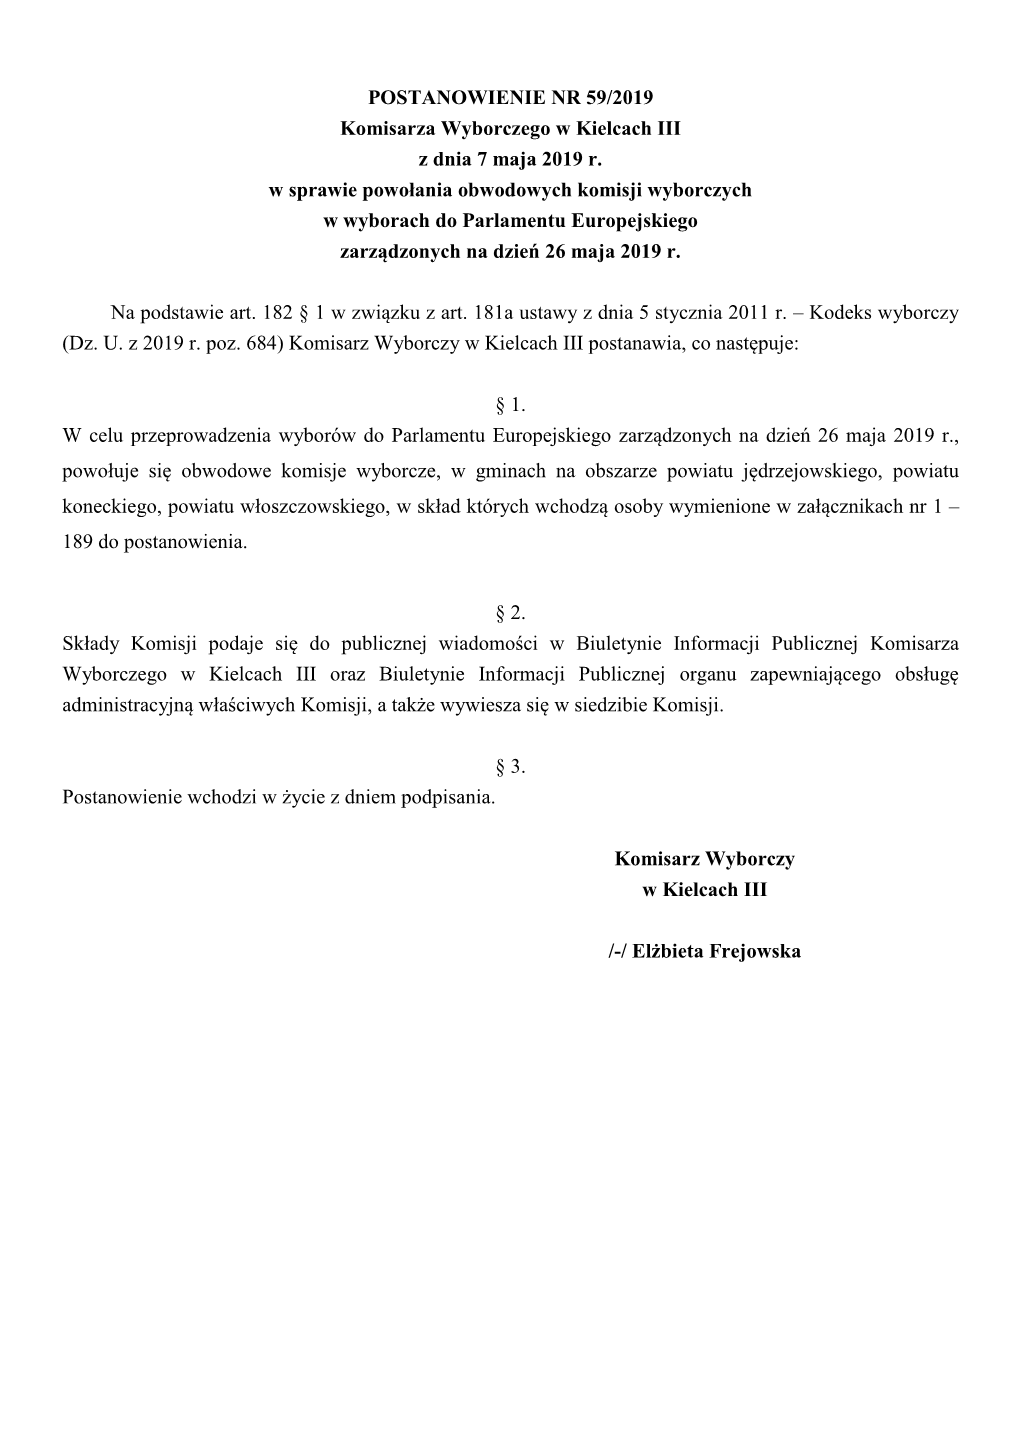 POSTANOWIENIE NR 59/2019 Komisarza Wyborczego W Kielcach III Z Dnia 7 Maja 2019 R